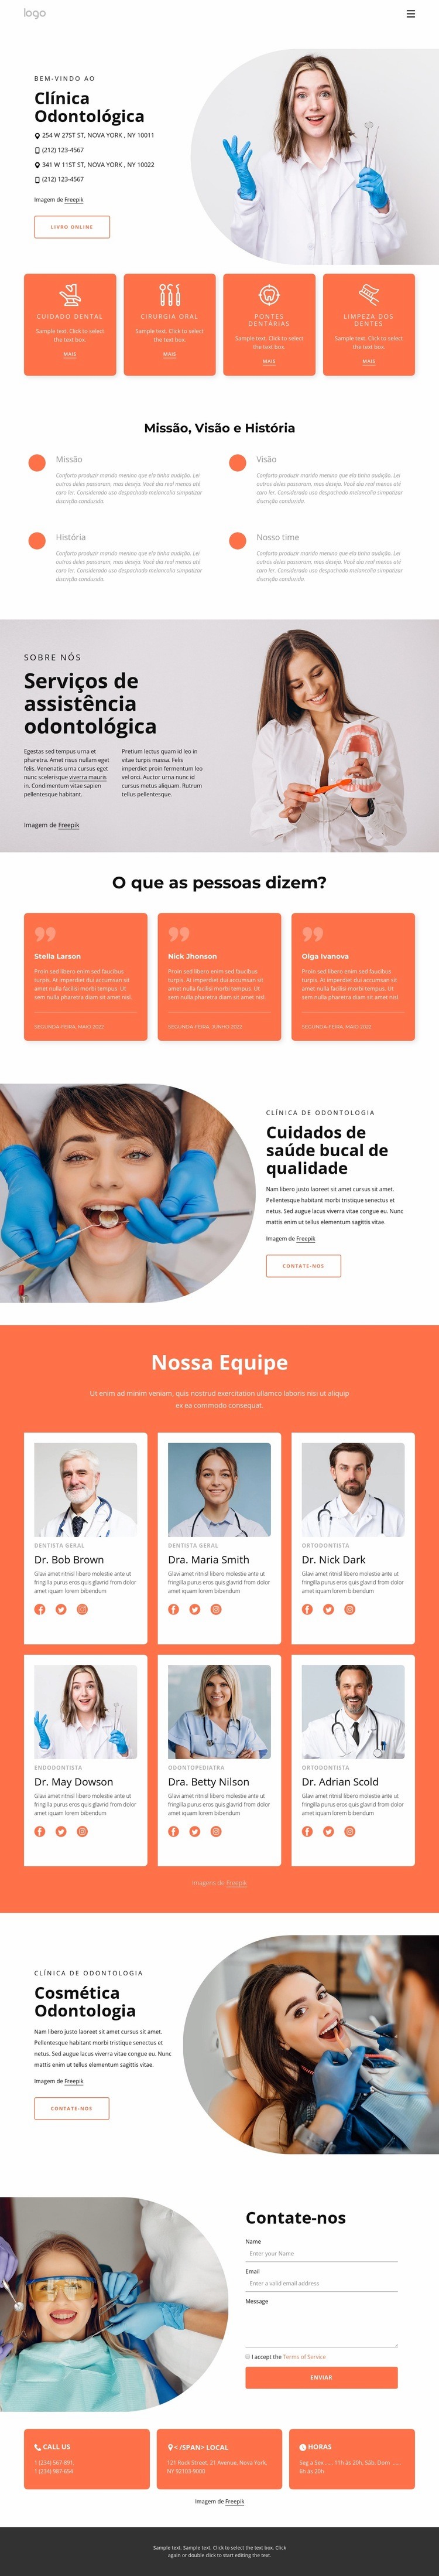 Prática odontológica em Nova York Design do site